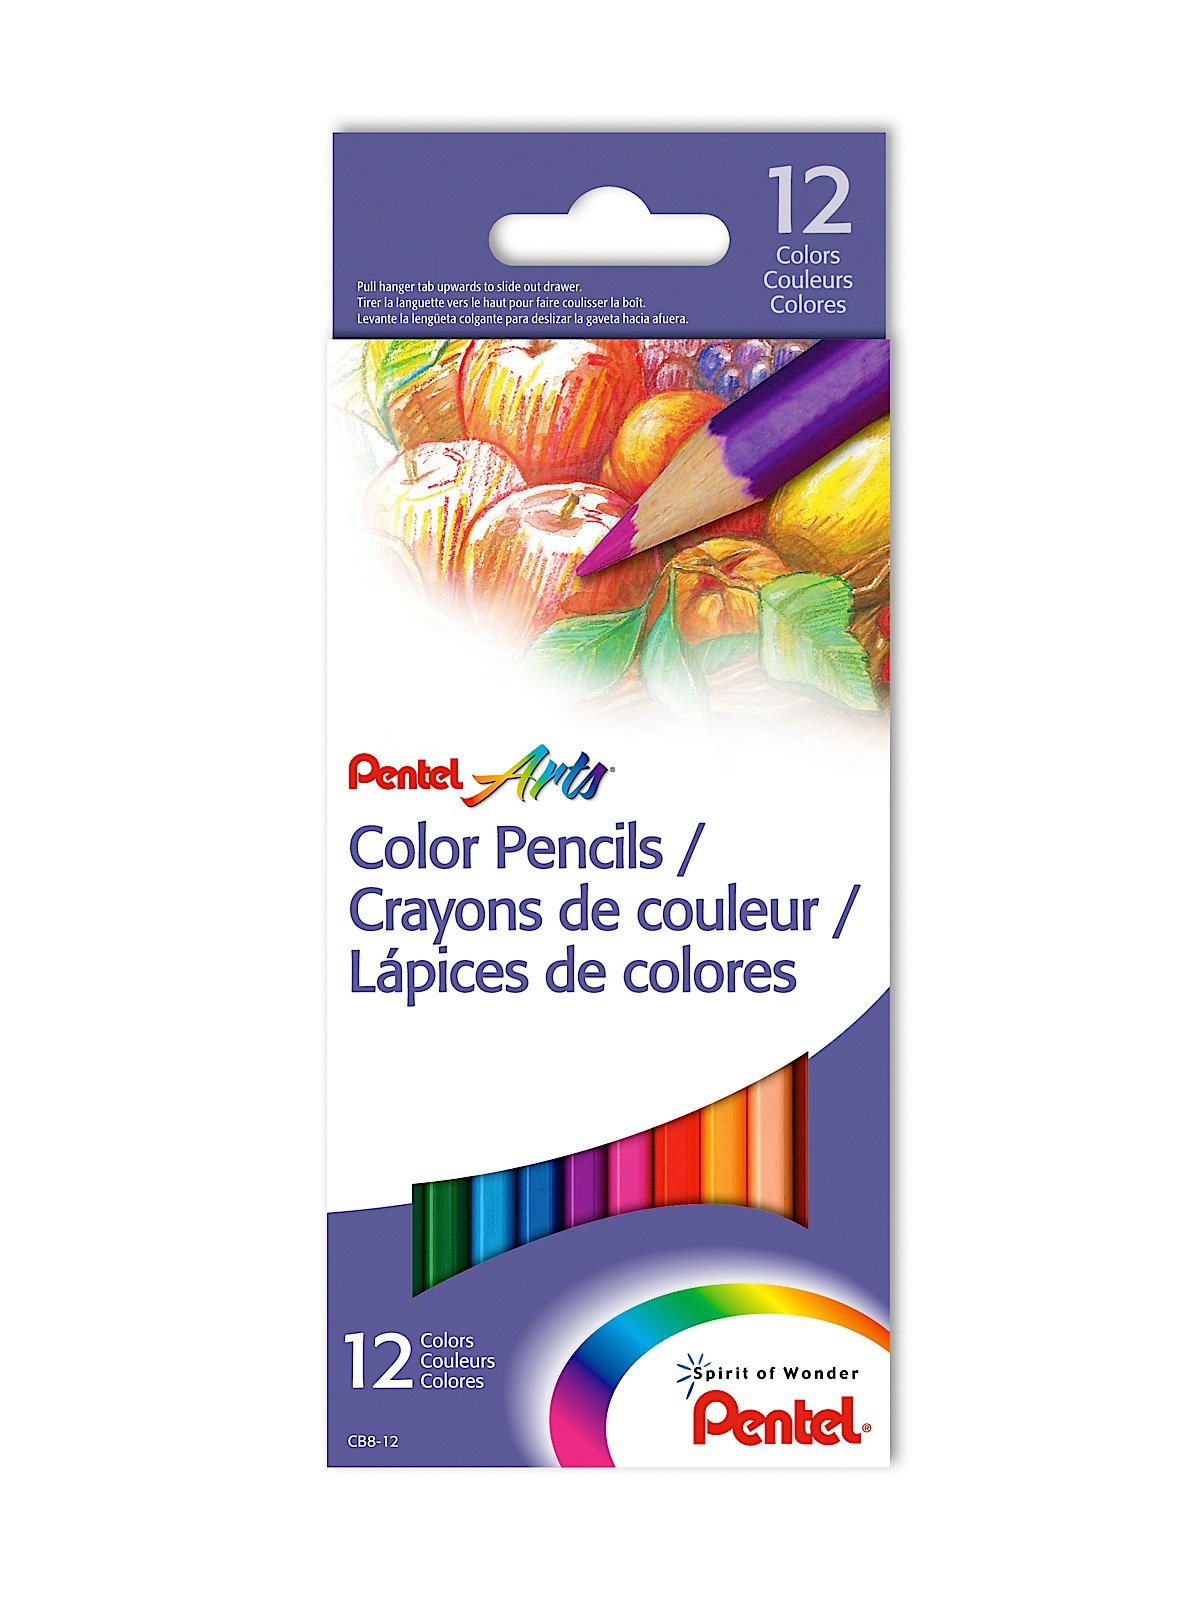 Pentel Colored Pencil Assortments